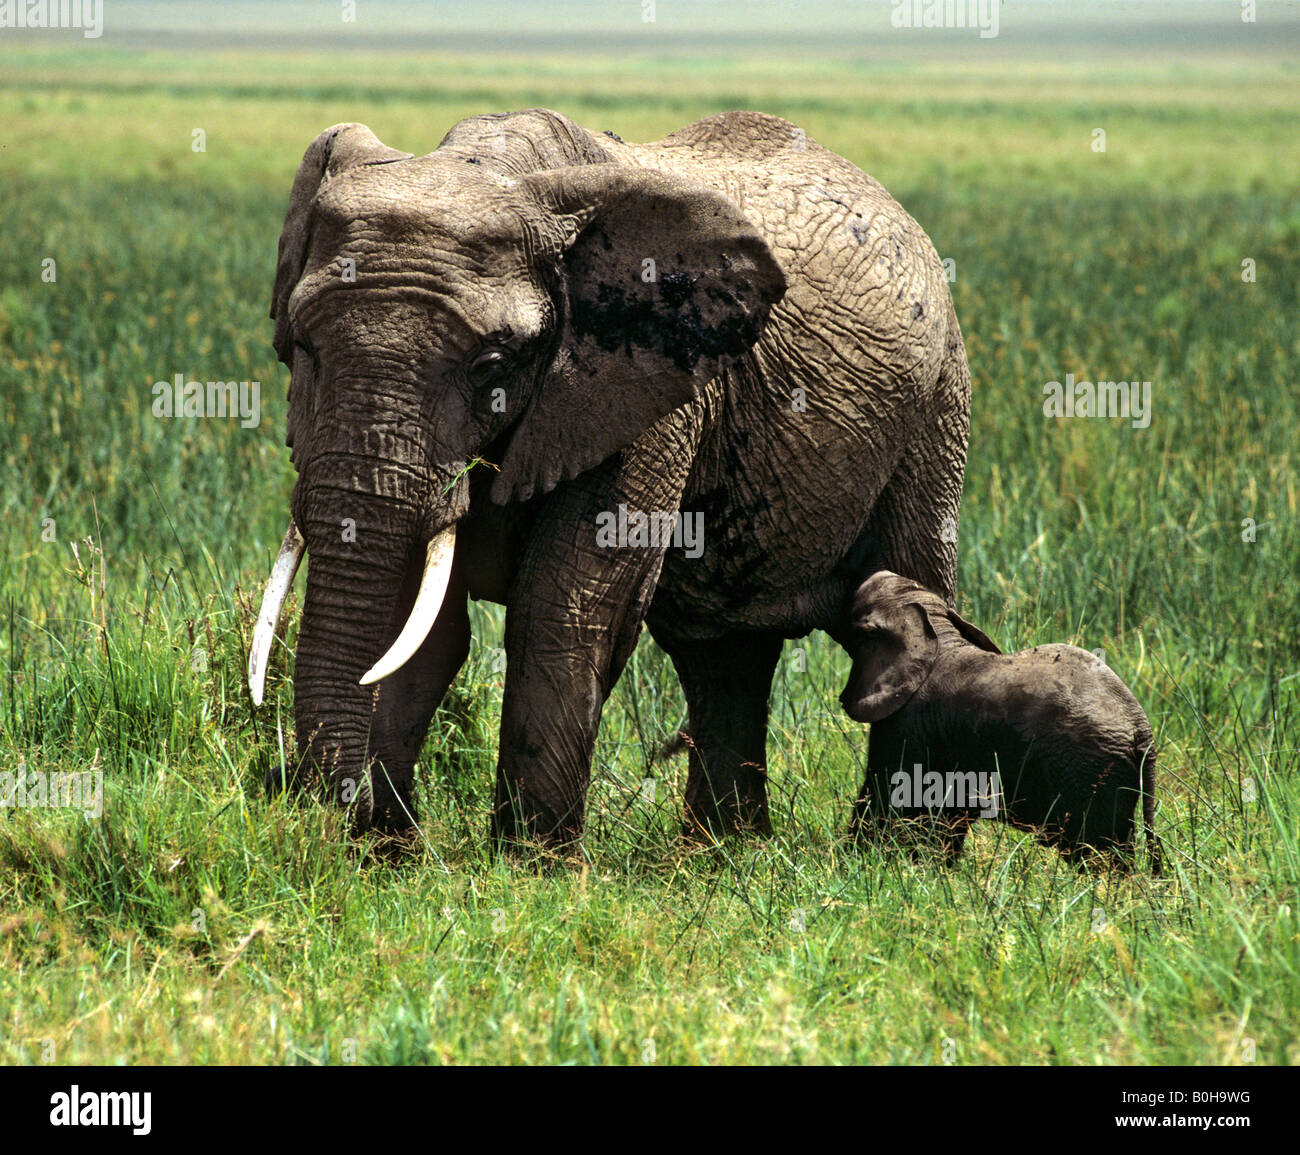 Bush africain - ou de savane Elephant (Loxodonta africana) et ses jeunes, la réserve naturelle de Masai Mara, Kenya Banque D'Images